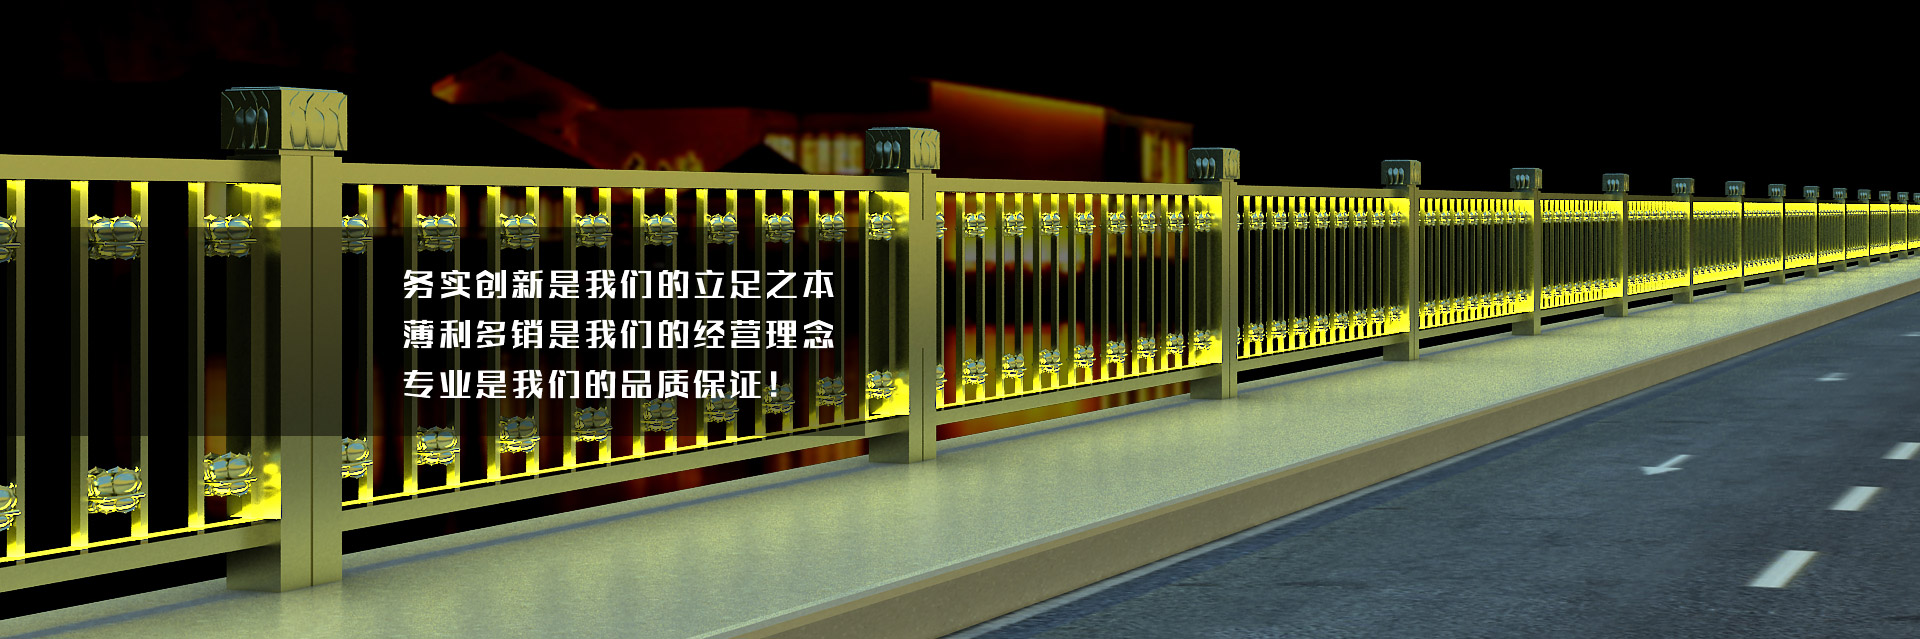 关于当前产品k2网投20120·(中国)官方网站的成功案例等相关图片